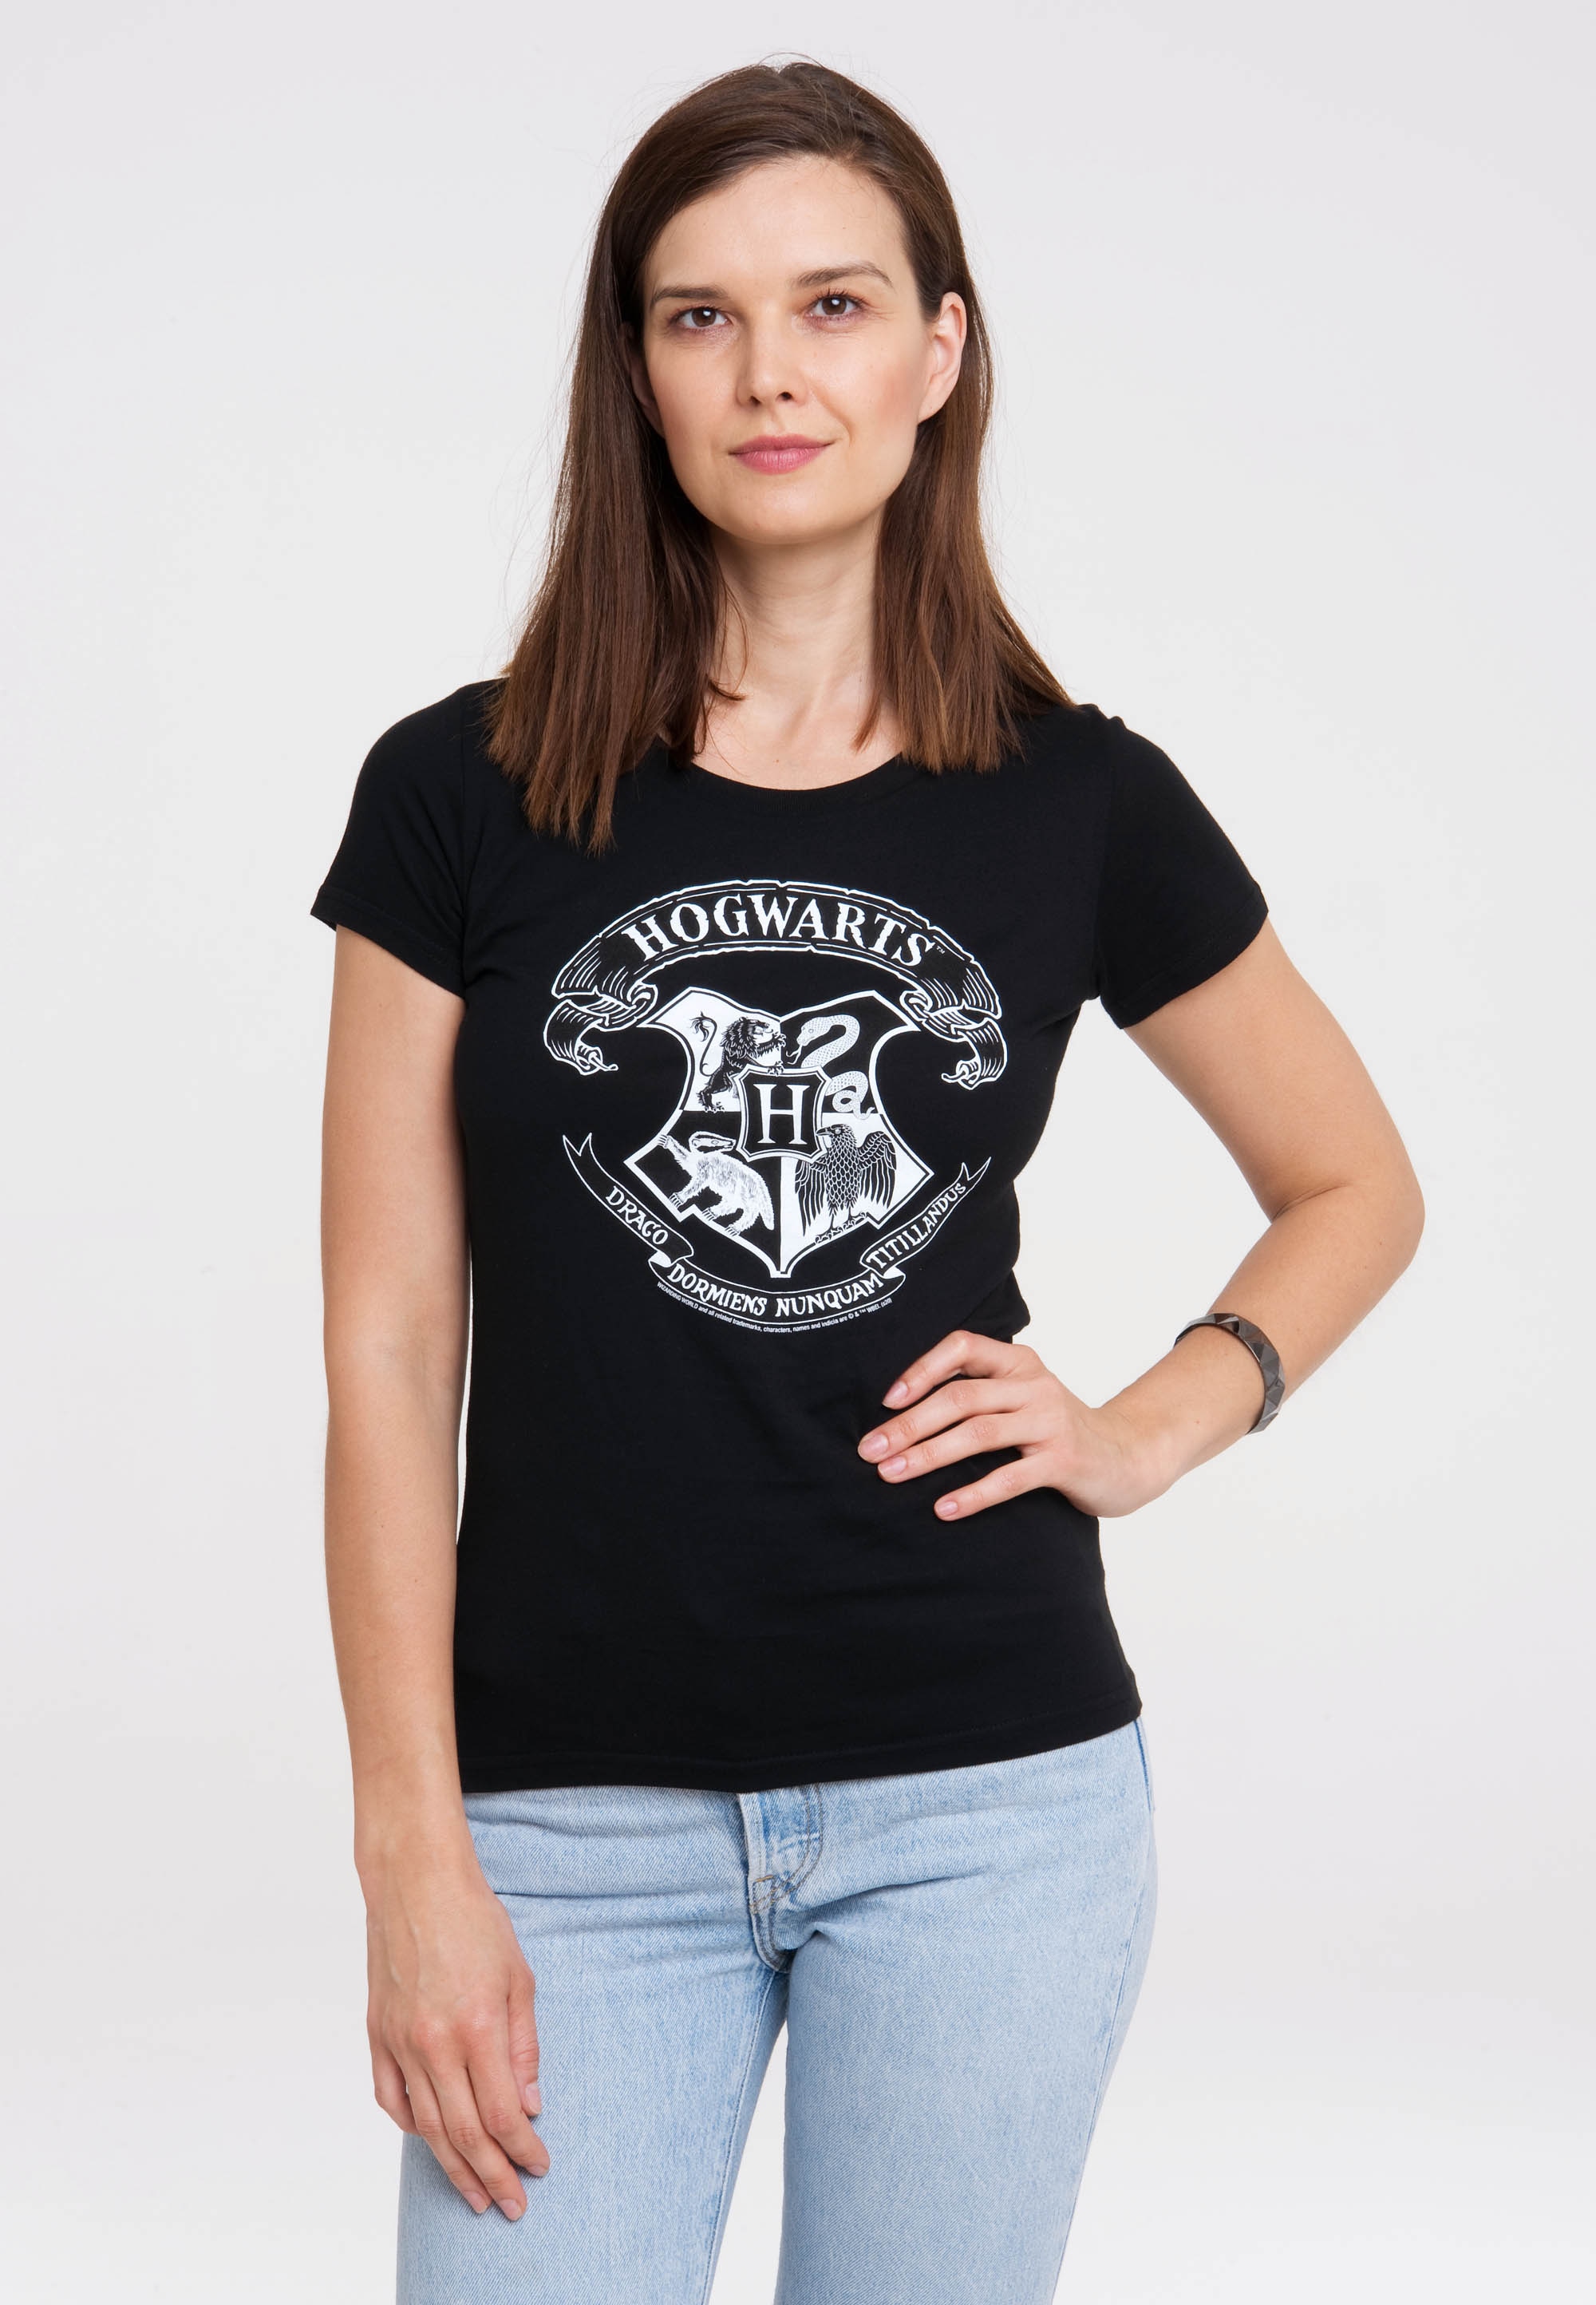 Originaldesign Potter - (Weiß)«, Logo Hogwarts LOGOSHIRT shoppen T-Shirt mit lizenziertem »Harry